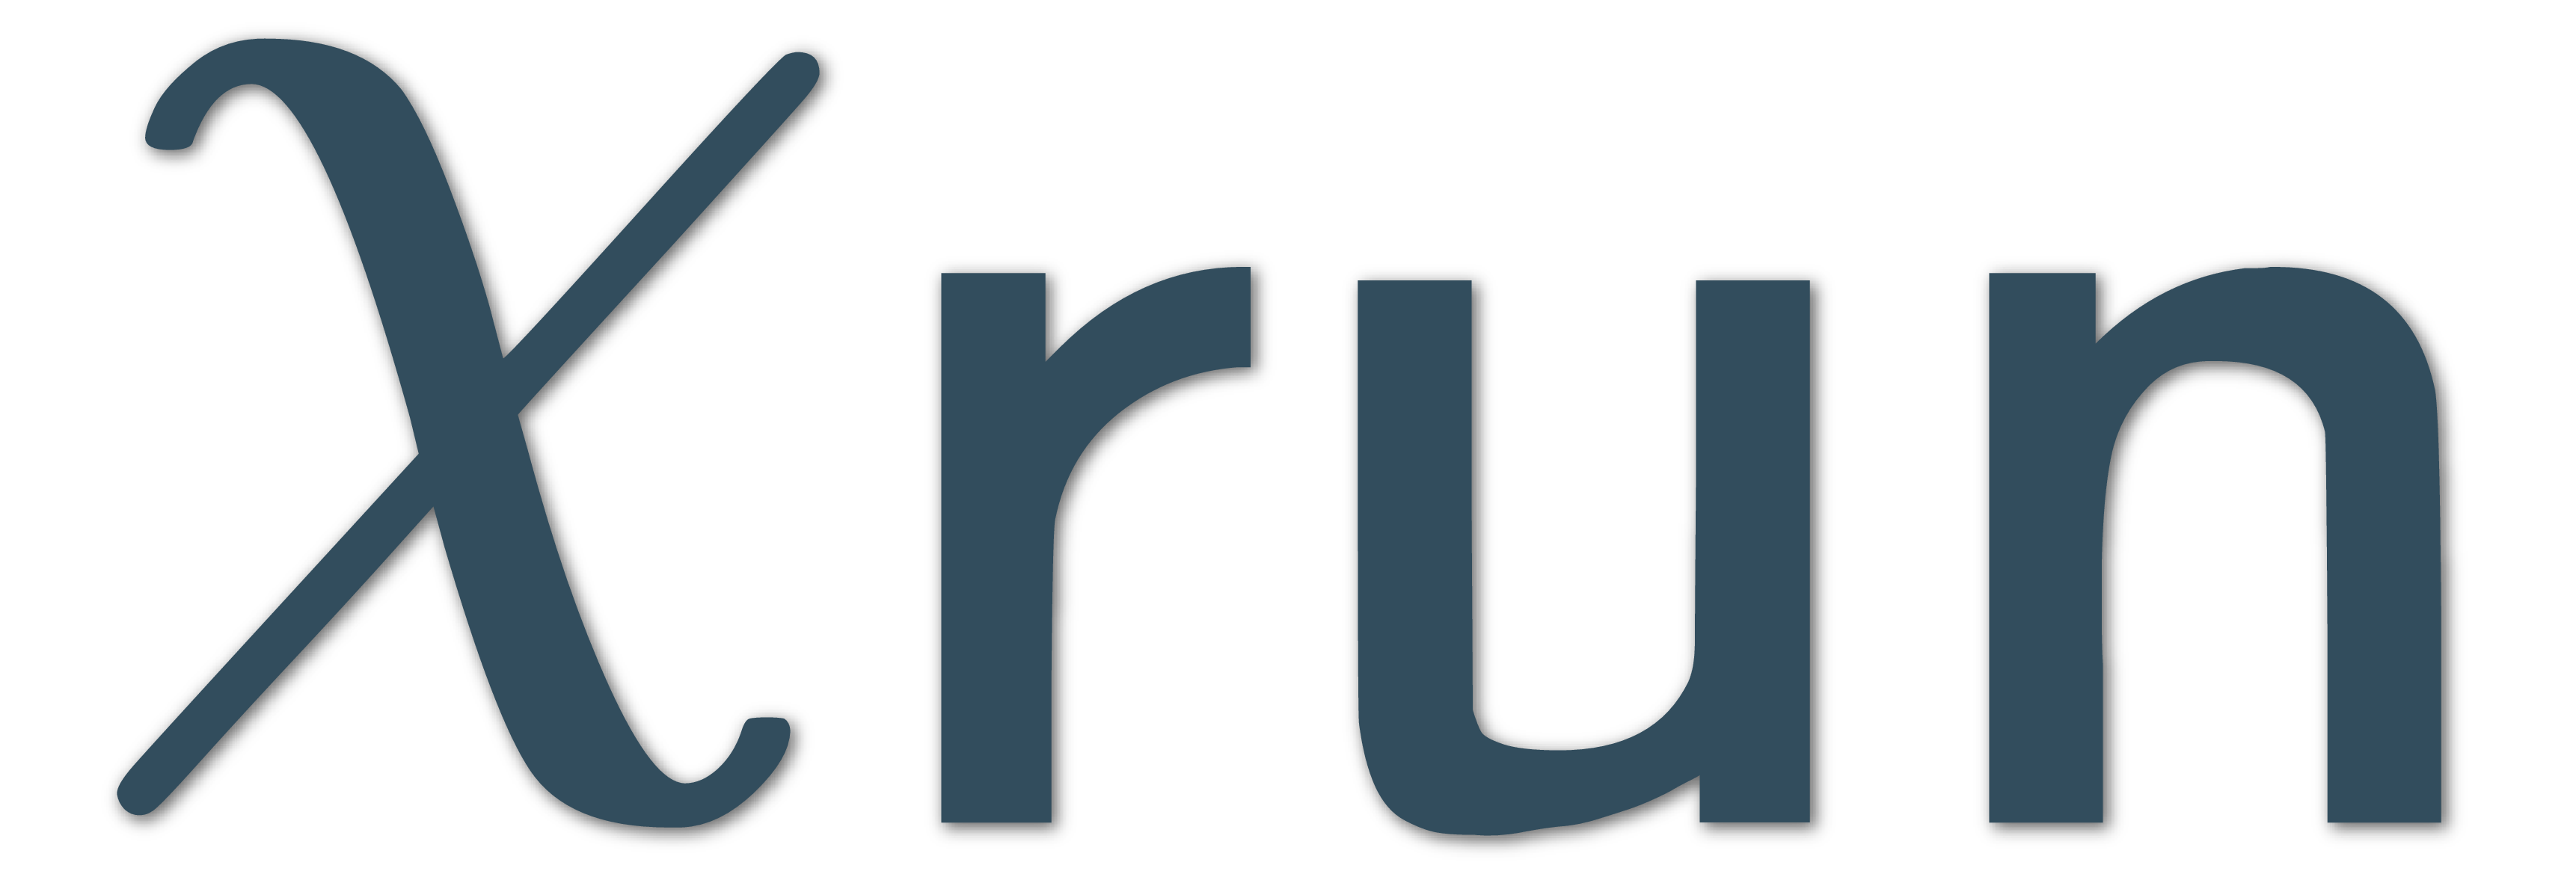 Chirun logo